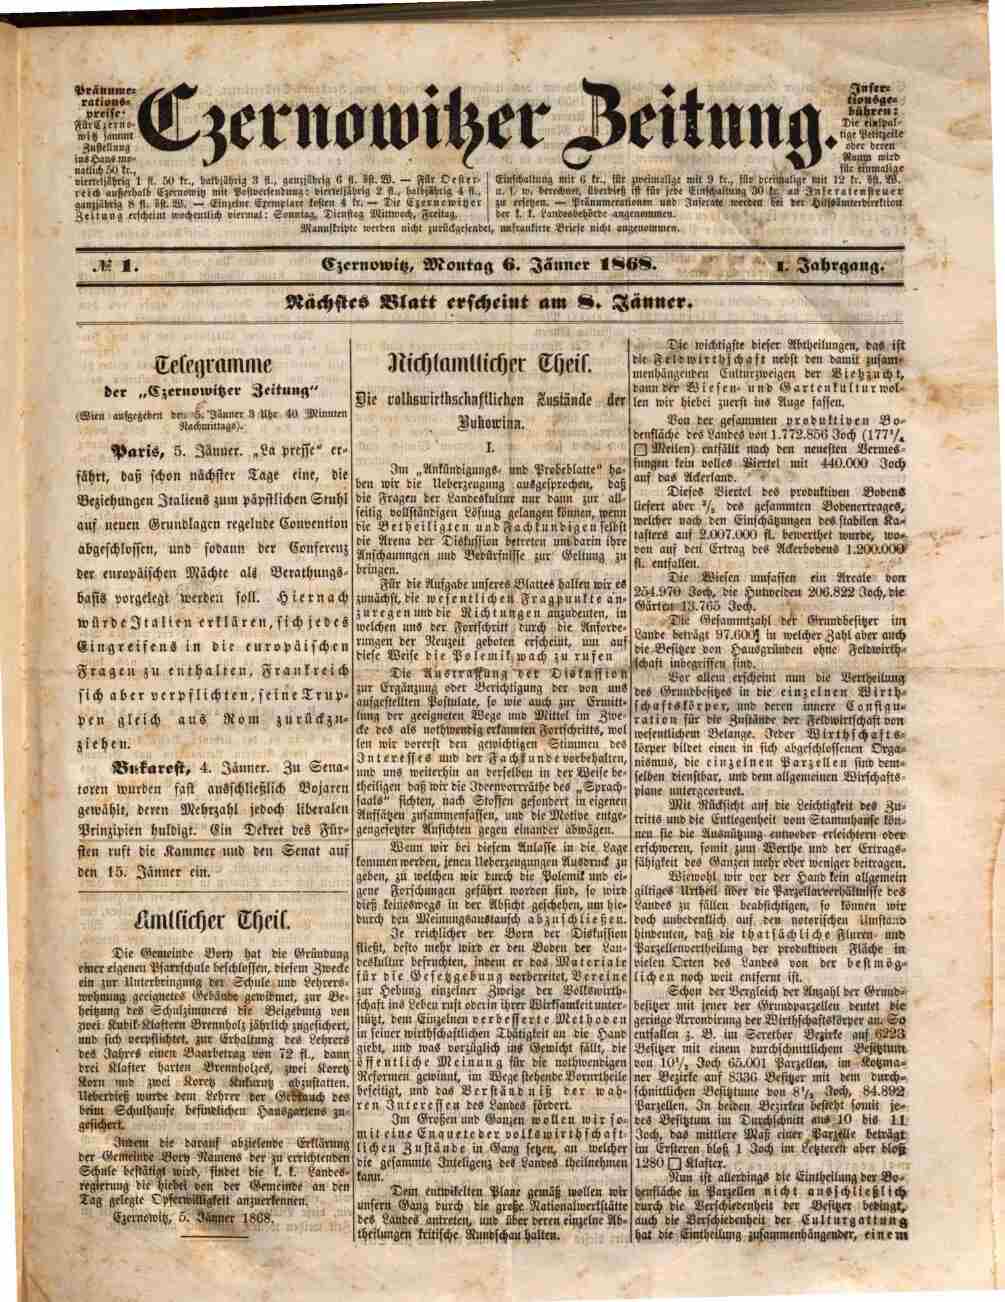 Czernowitzer Zeitung, 6.1.1868, S. 1, ANNO/ÖNB